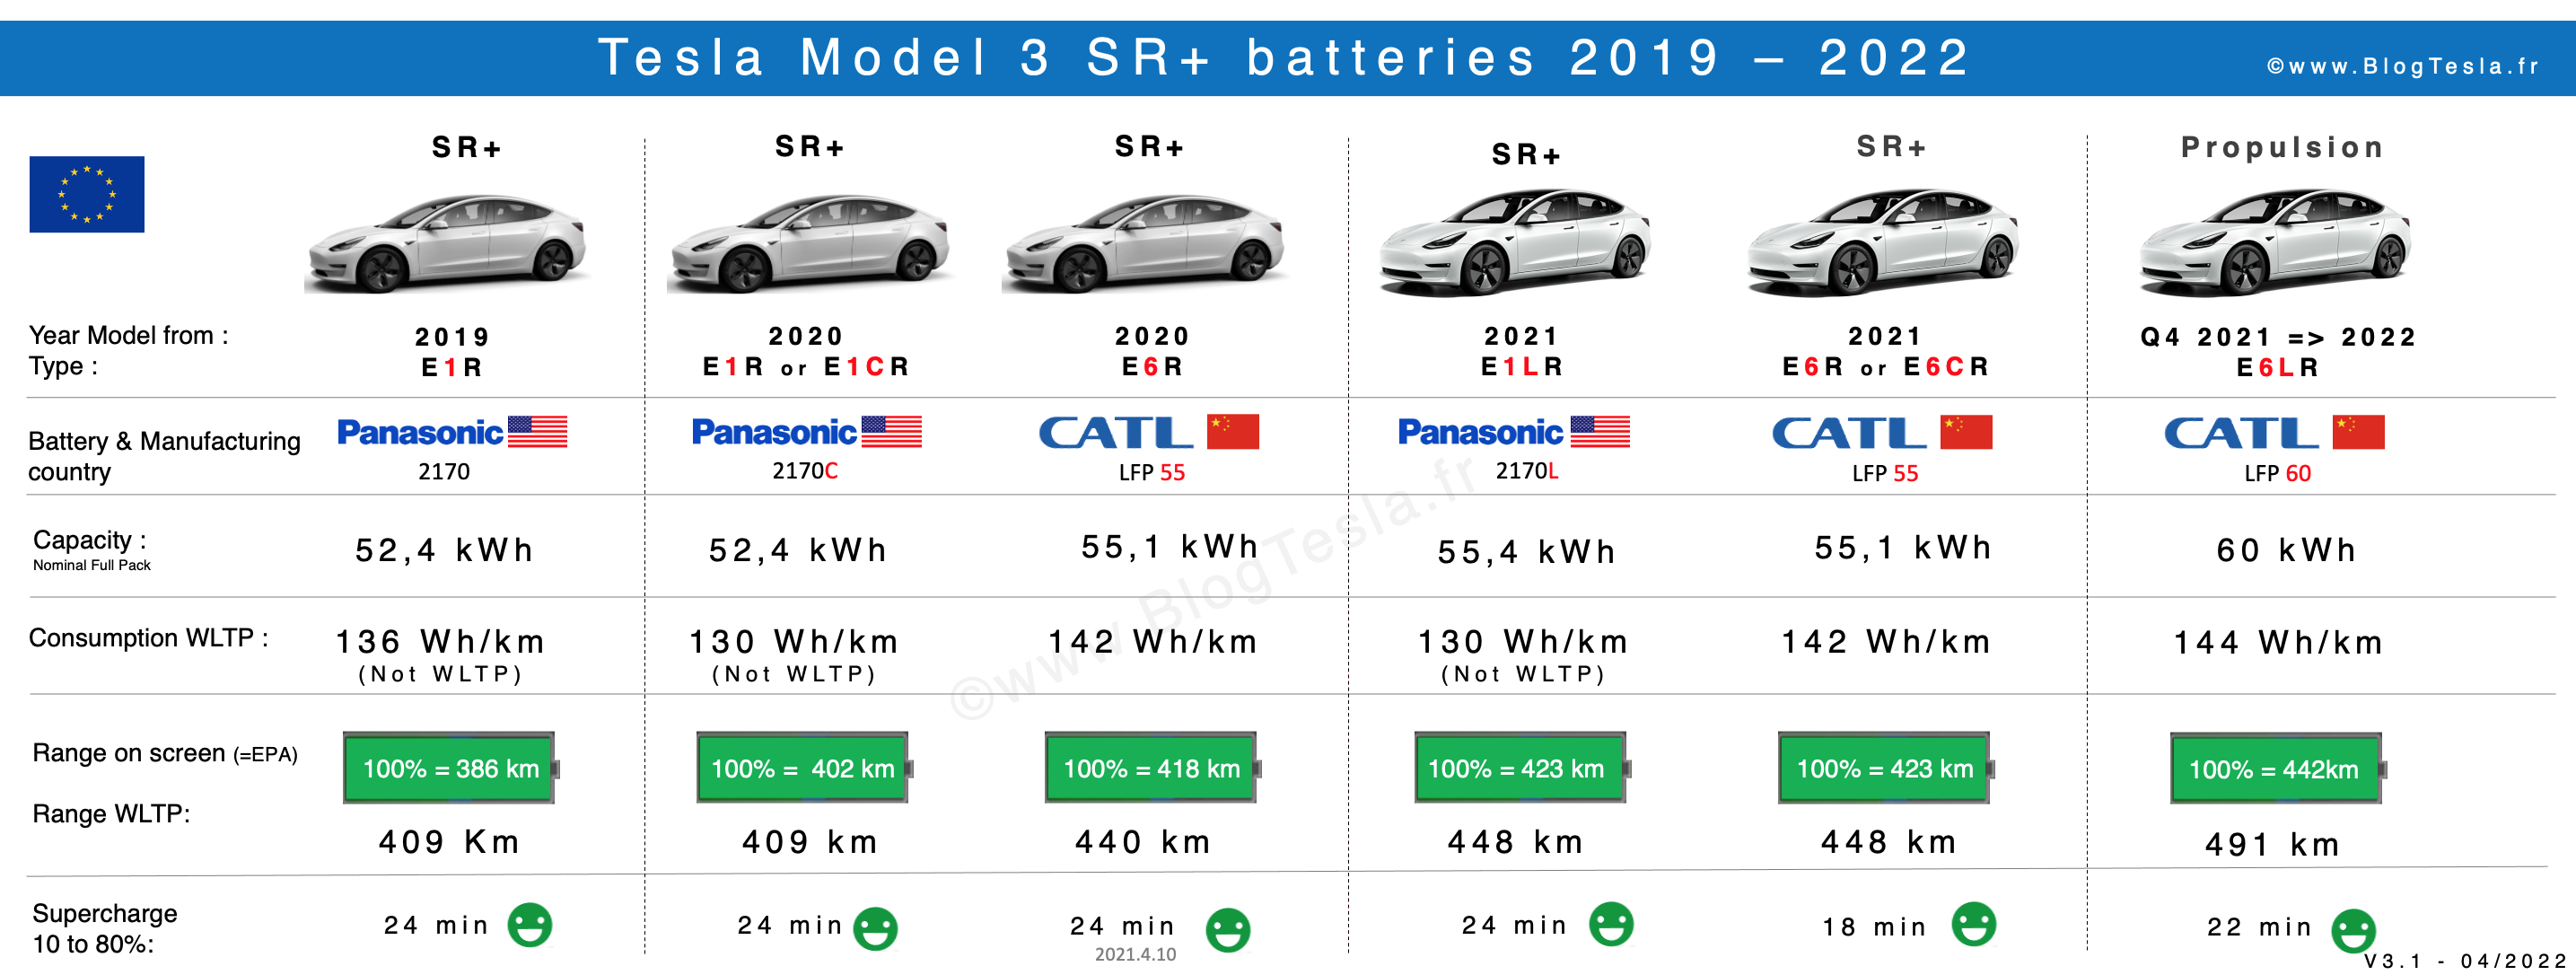 Batterie, capacité et dégradation - Model 3 Propulsion - Forum et Blog Tesla